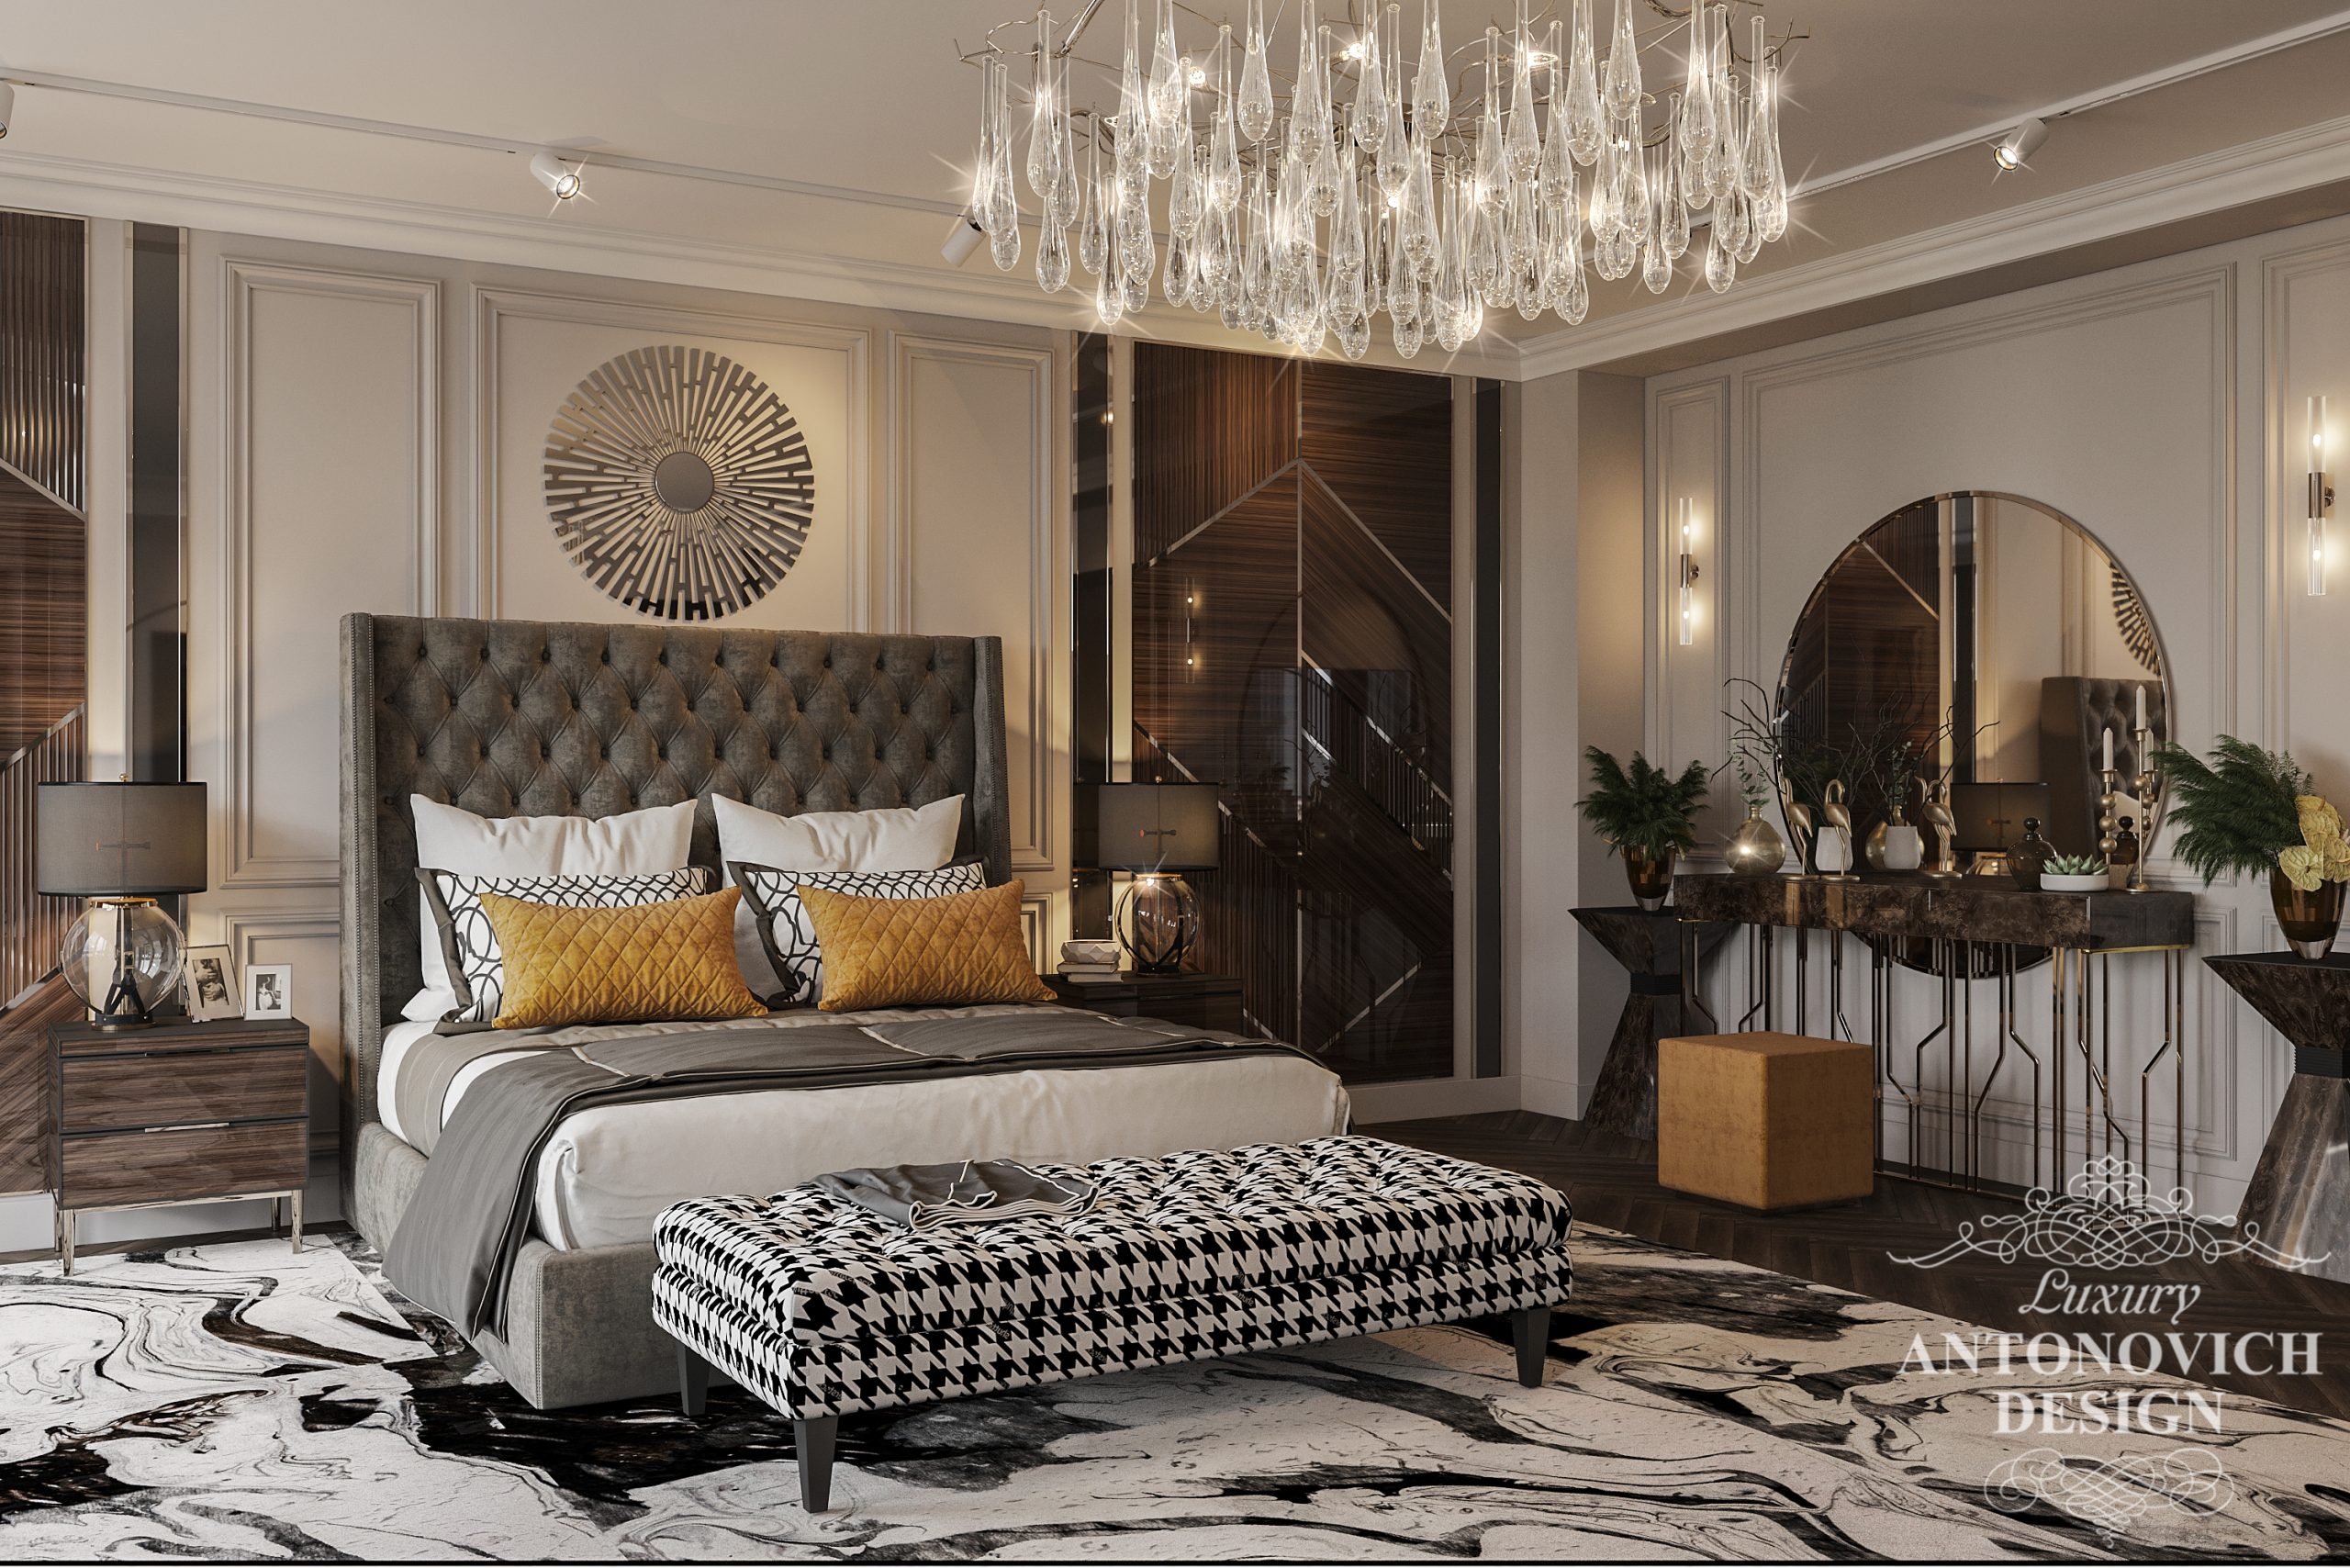 Яркий акцентный декор в стиле ар-декор в авторском дизайне дорогой дизайнерской спальни